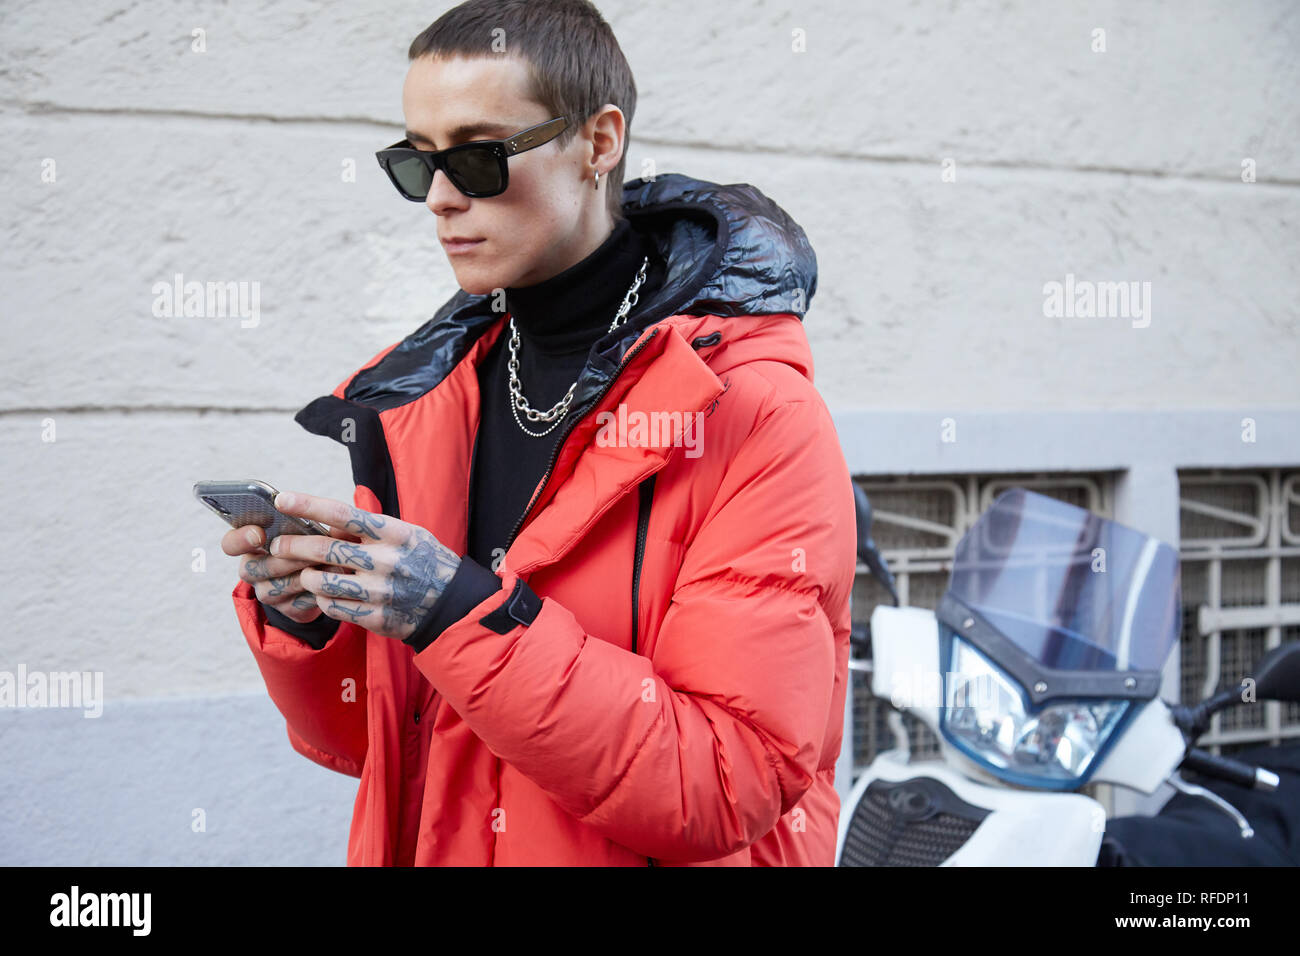 Milán, Italia 14 de enero de 2019: El Hombre con gafas de sol y Celine naranja